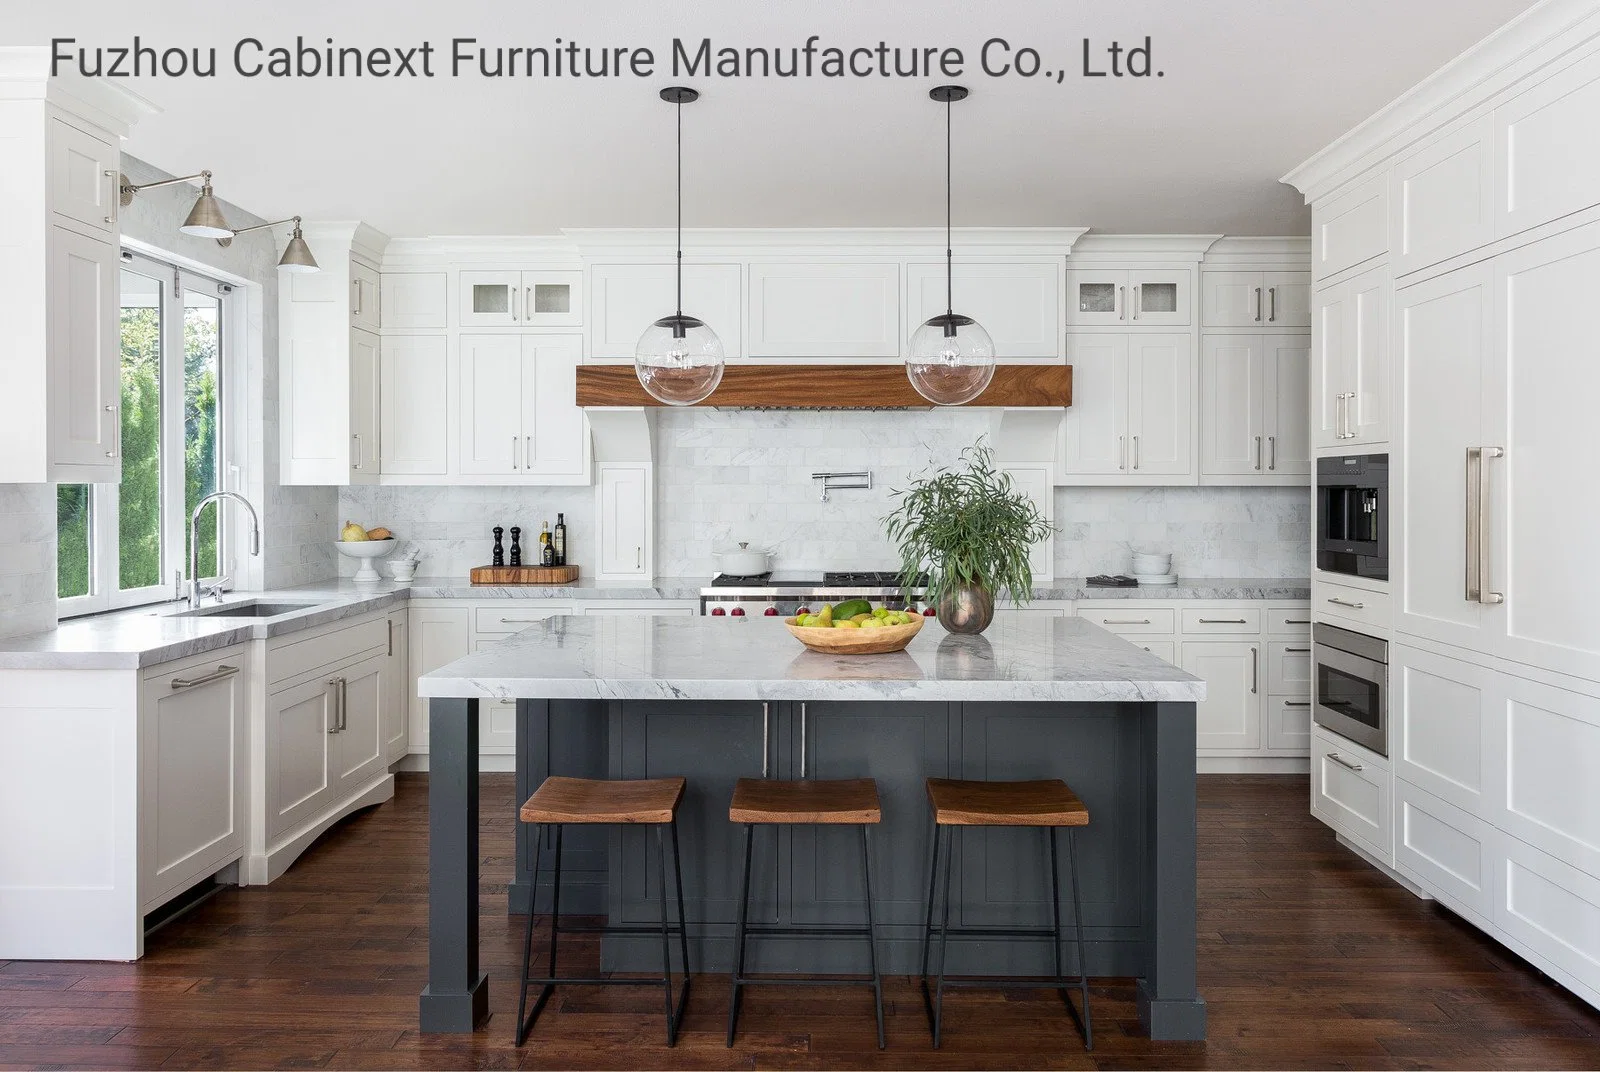 Un estilo moderno Blanco Gris azul muebles de madera estilo Shaker gabinetes de cocina